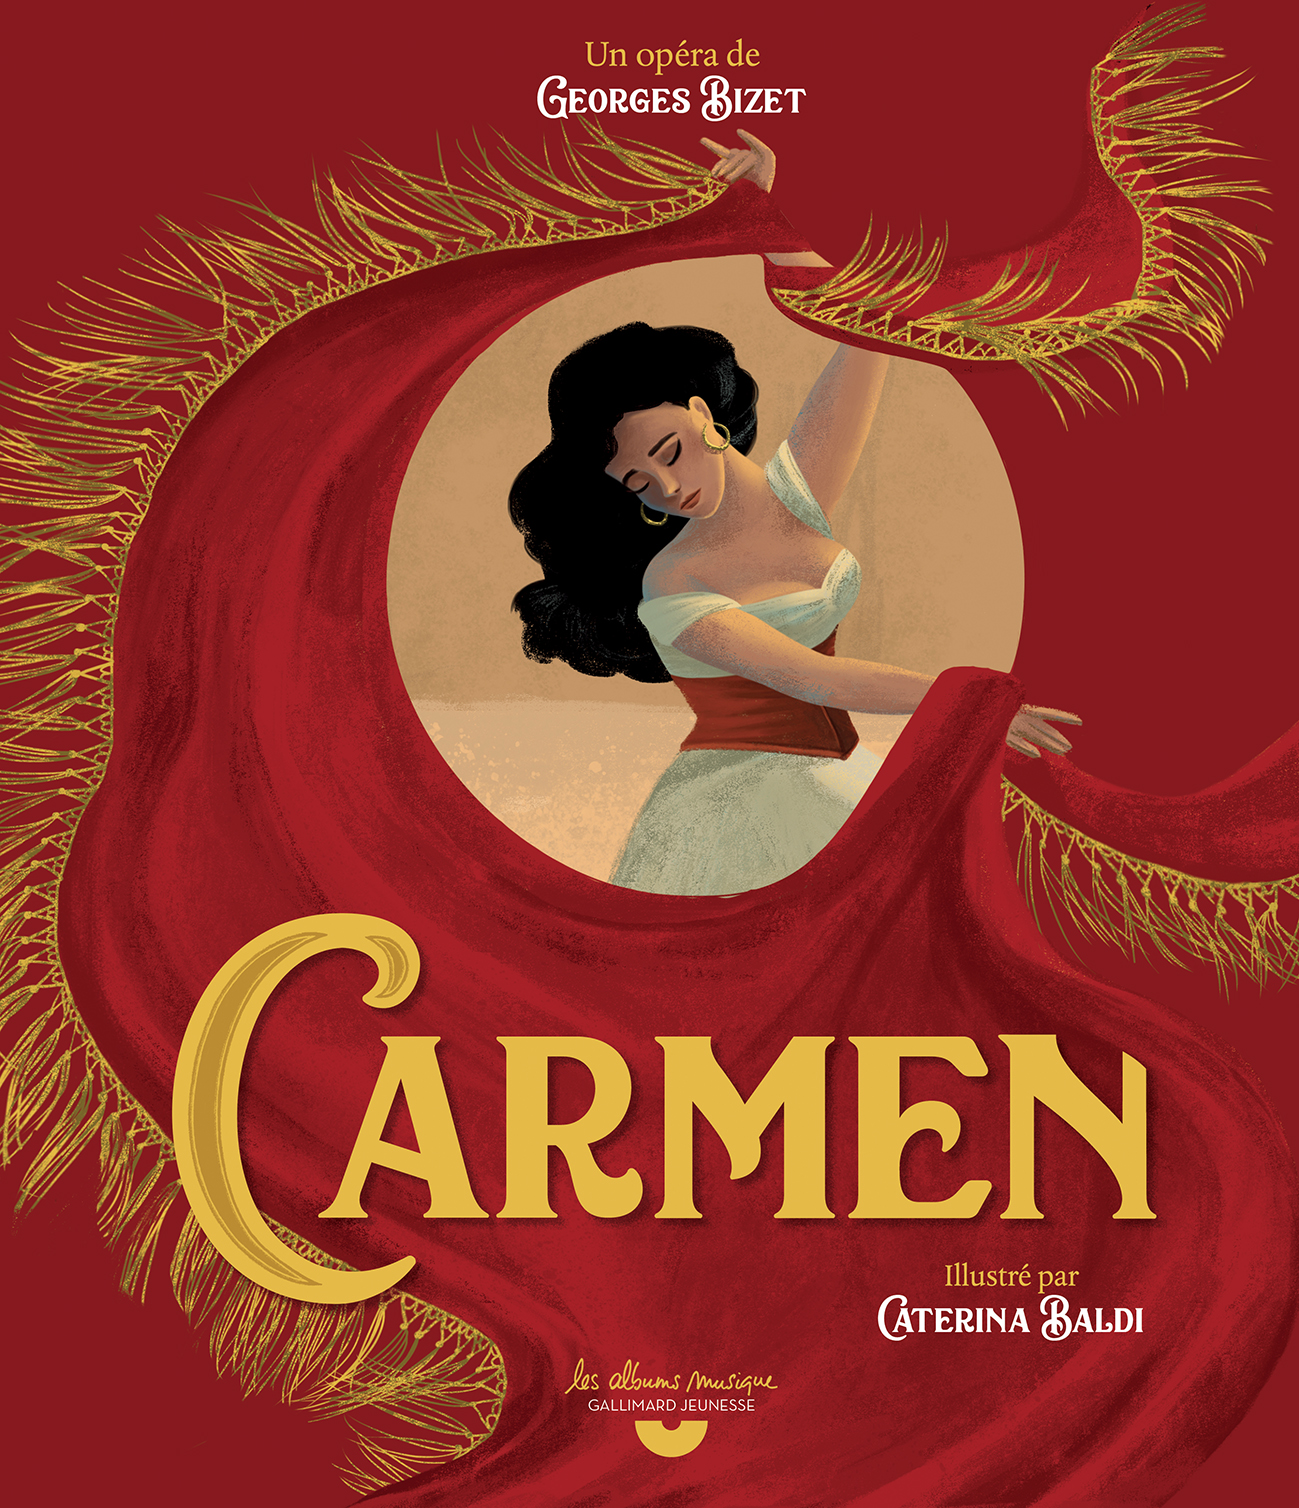 Carmen, Gallimard Jeunesse